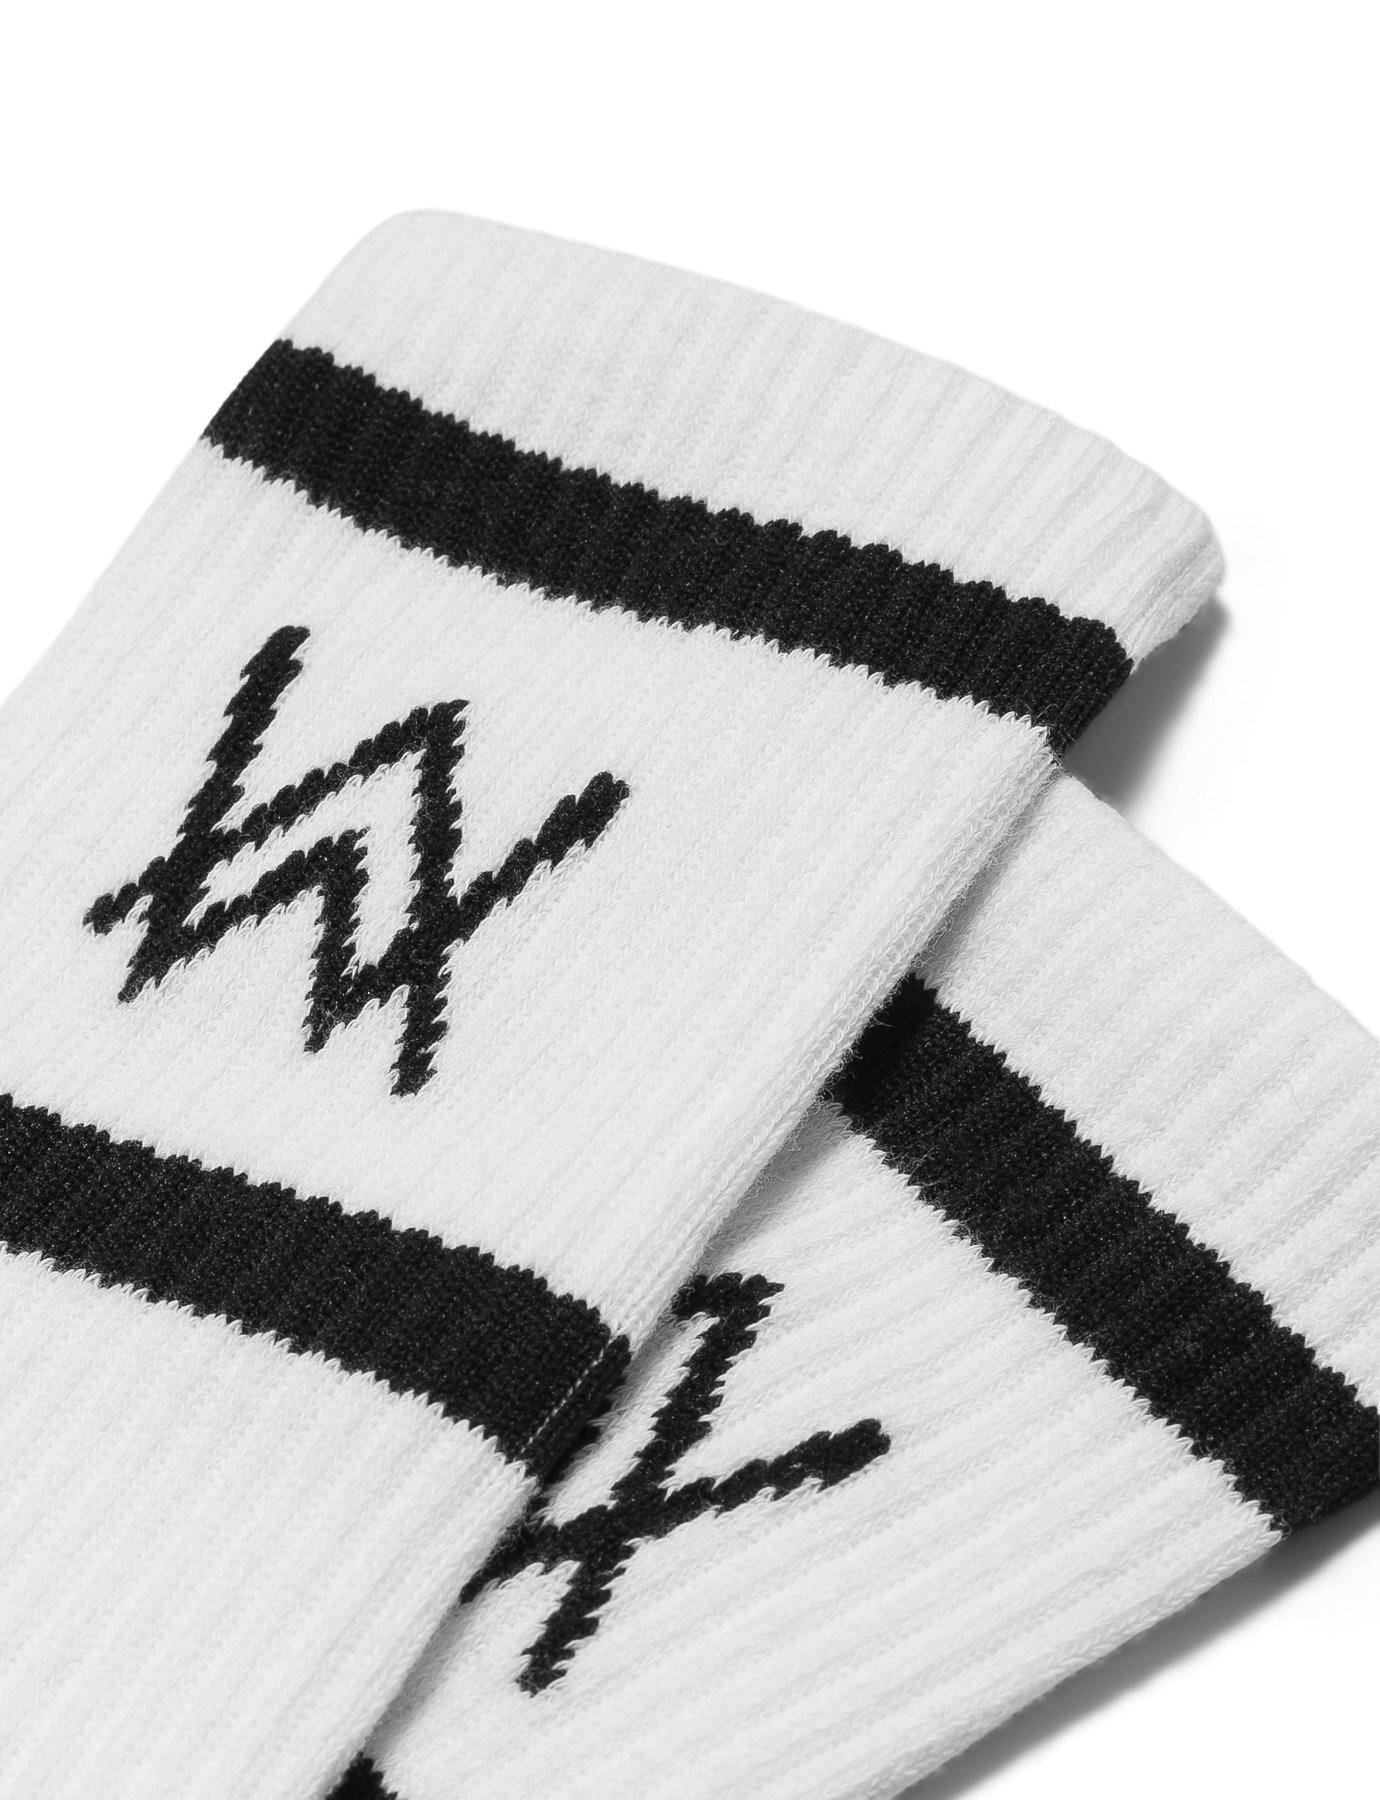 AW LOGO SPORTS SOCKS - BLACK/WHITE Socks Alan Walker Official Merchandise 